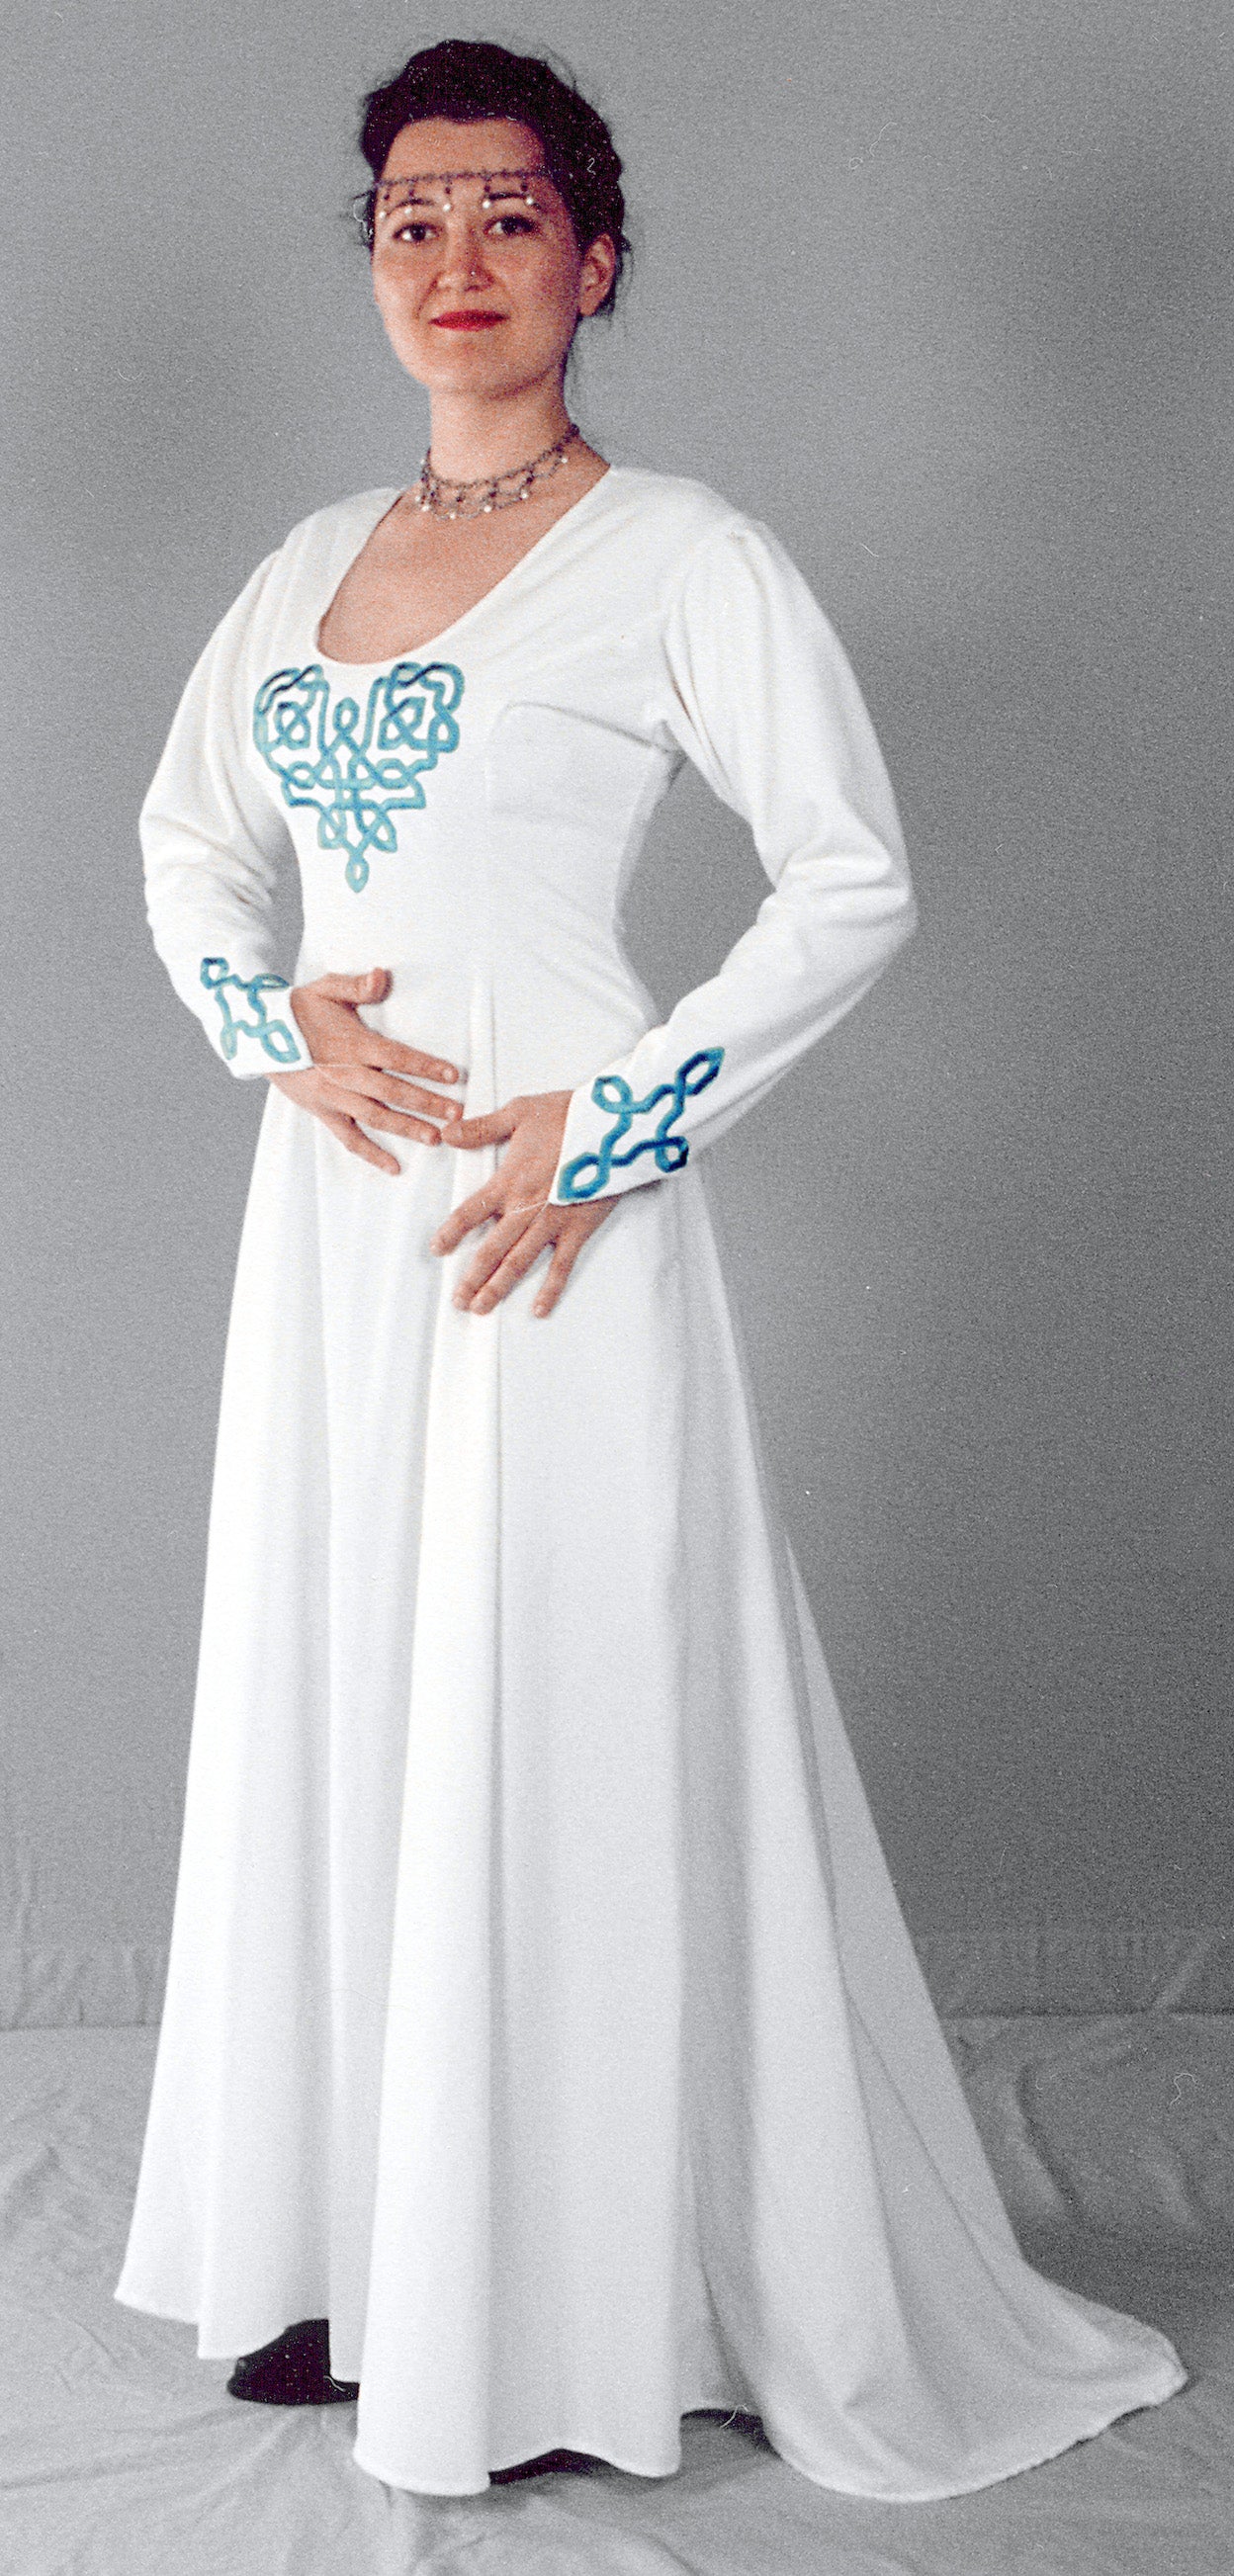 Gwendolyn Wedding Dress